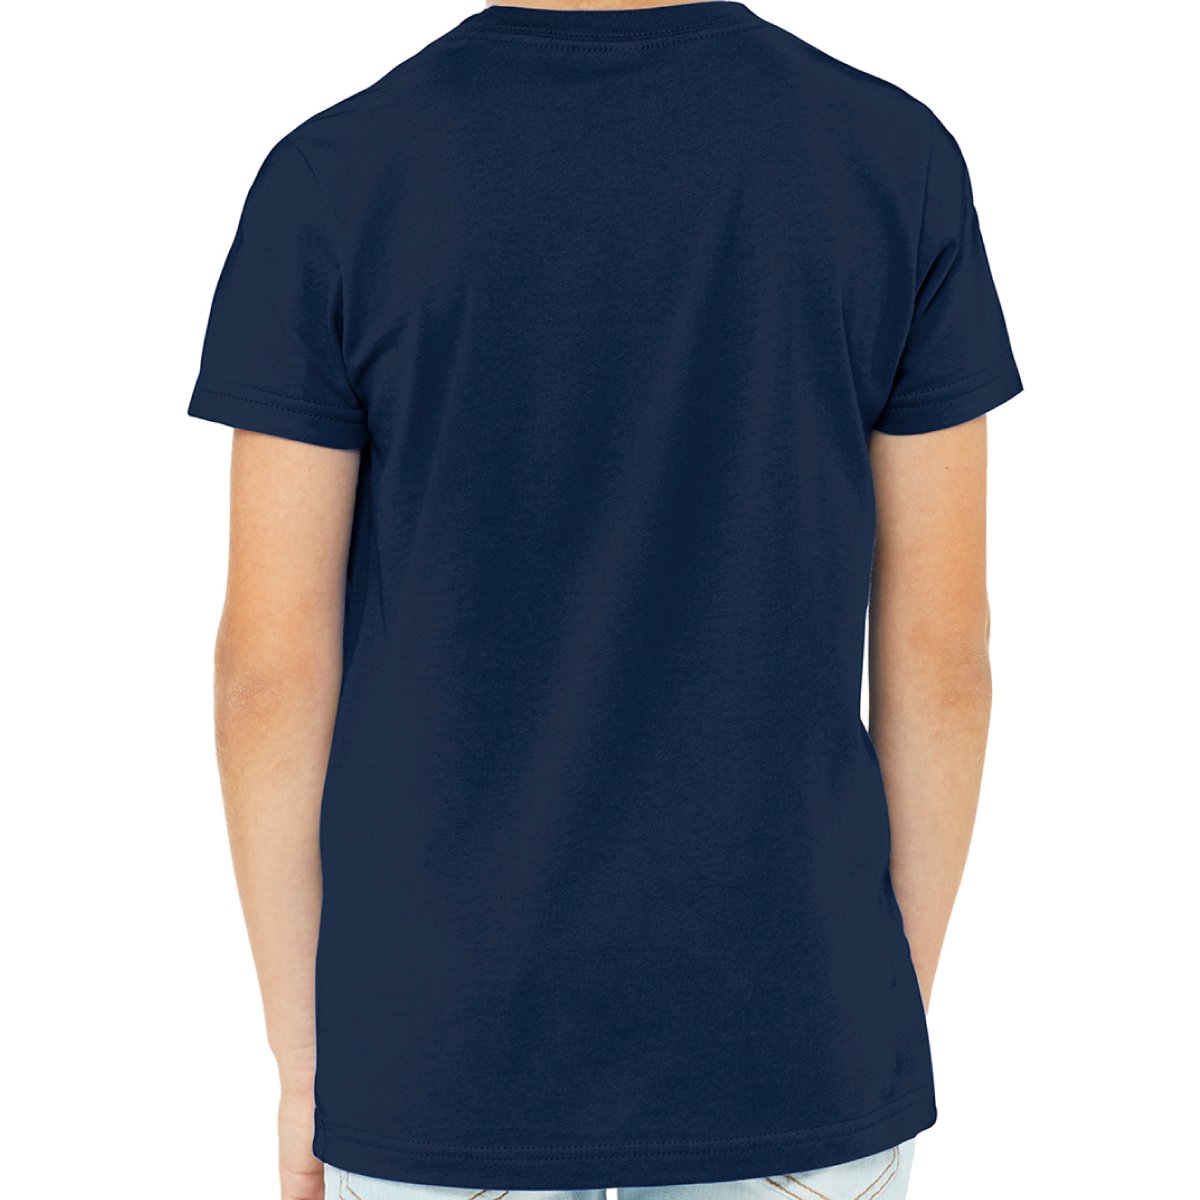 Oak Fire Fundraiser - YOUTH T-Shirt - Get Deerty